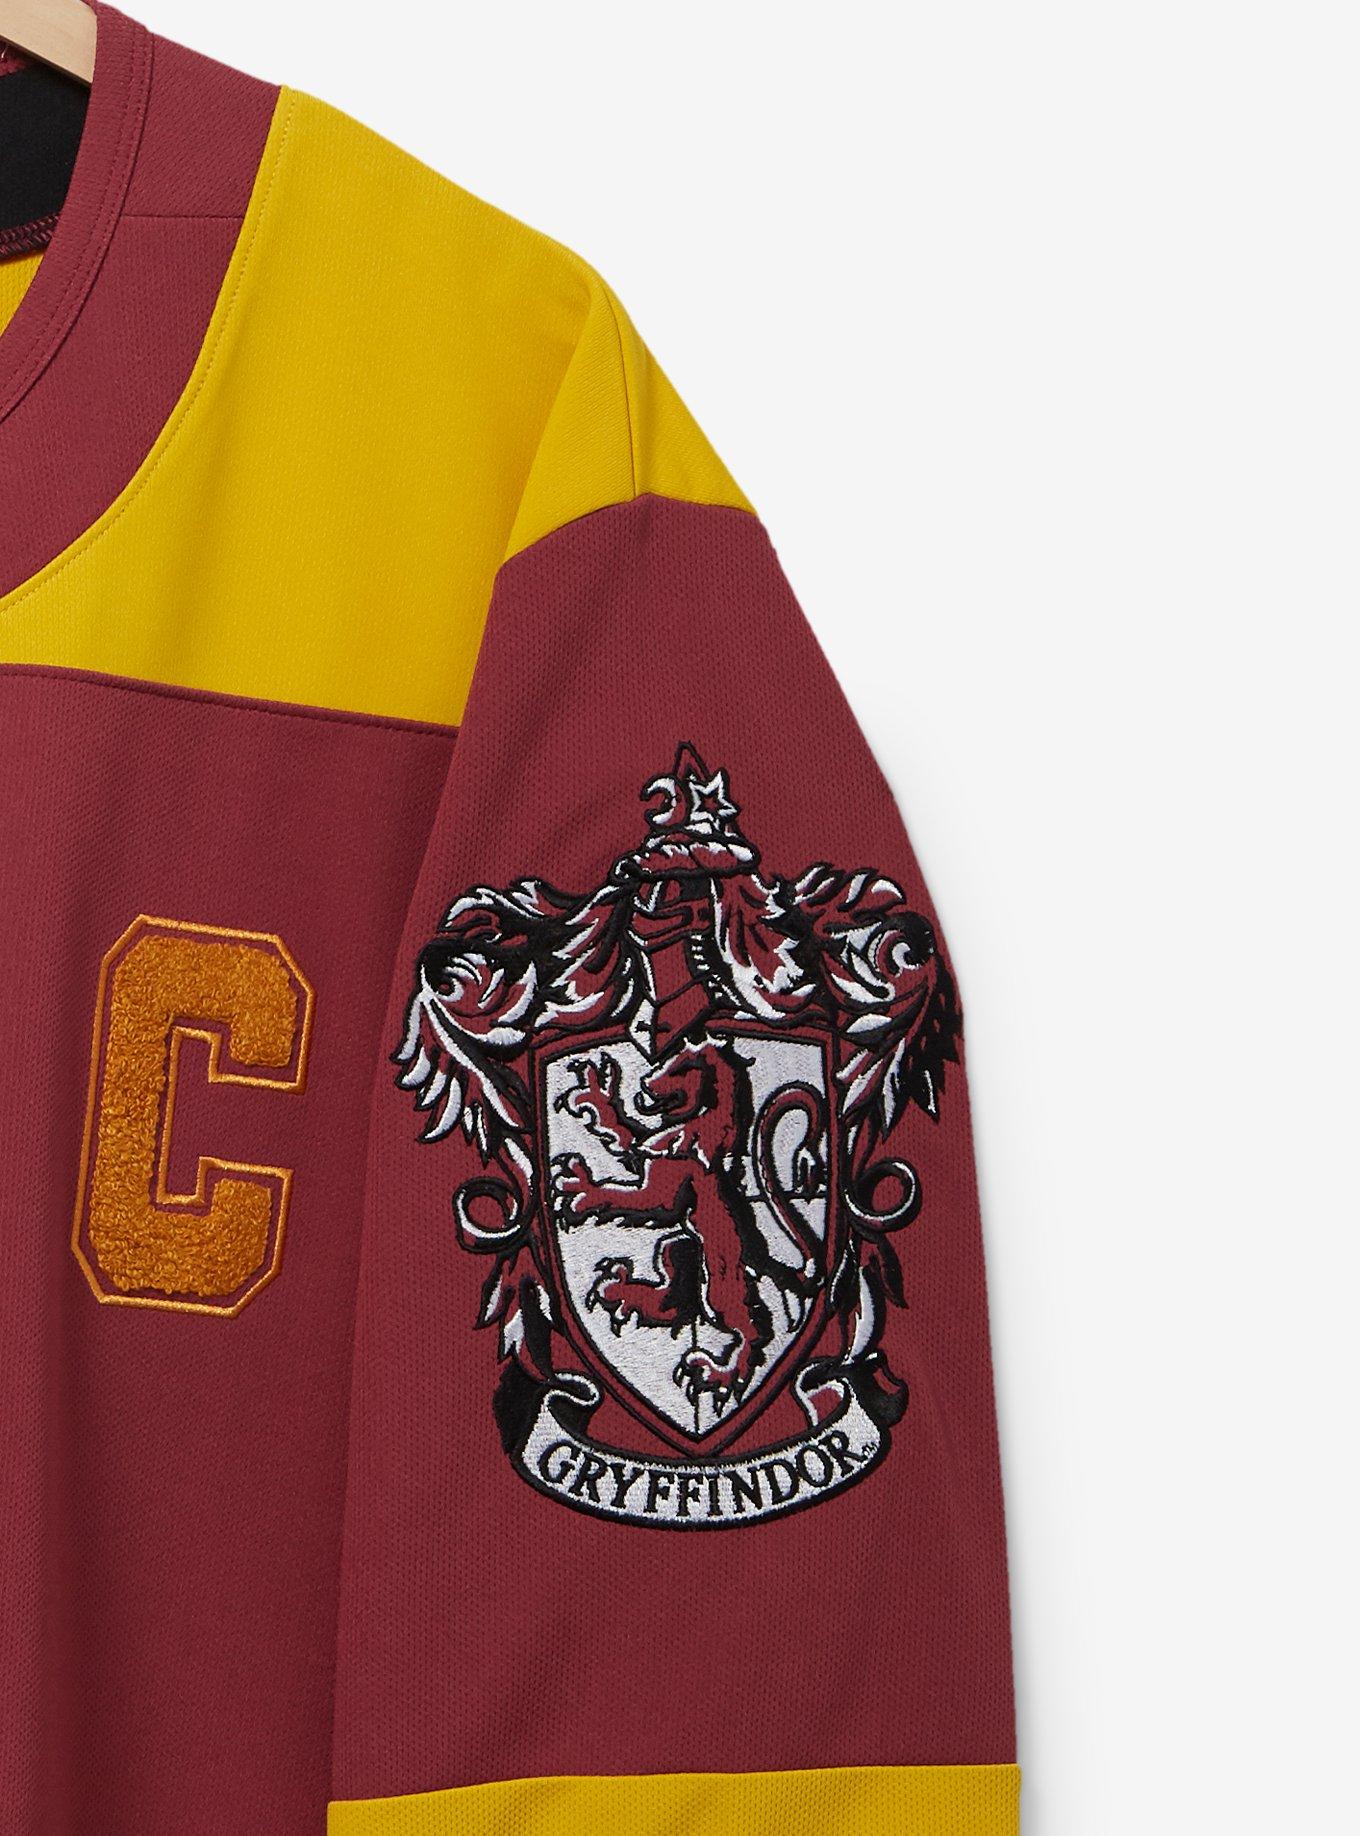 Harry Potter Gryffindor Hockey Jersey - BoxLunch Exclusive, DARK RED, alternate